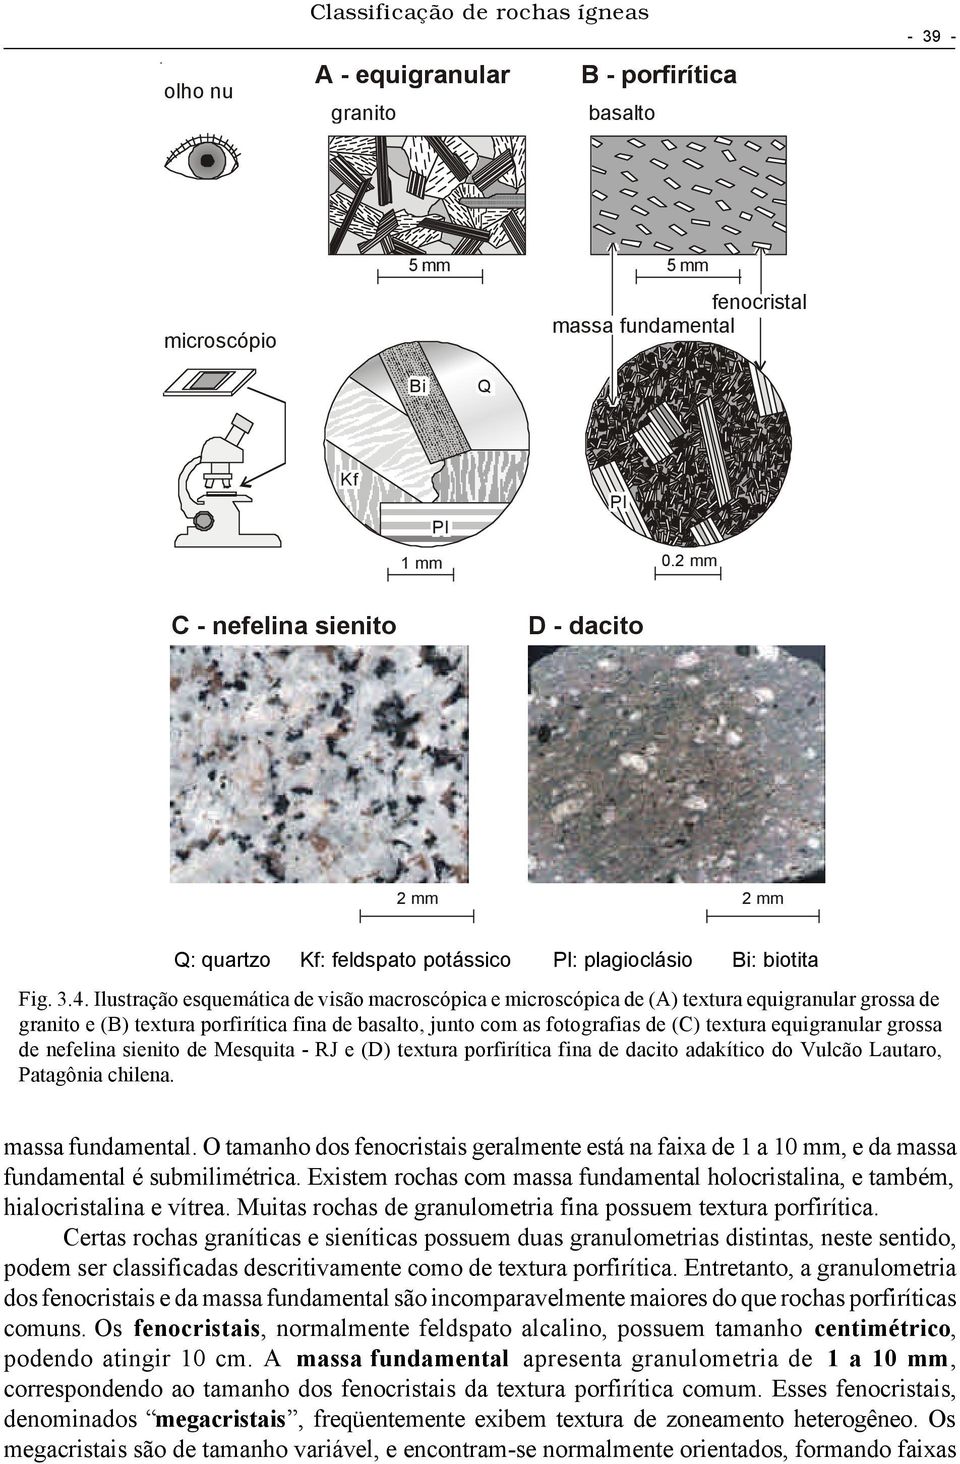 Ilustração esquemática de visão macroscópica e microscópica de (A) textura equigranular grossa de granito e (B) textura porfirítica fina de basalto, junto com as fotografias de (C) textura